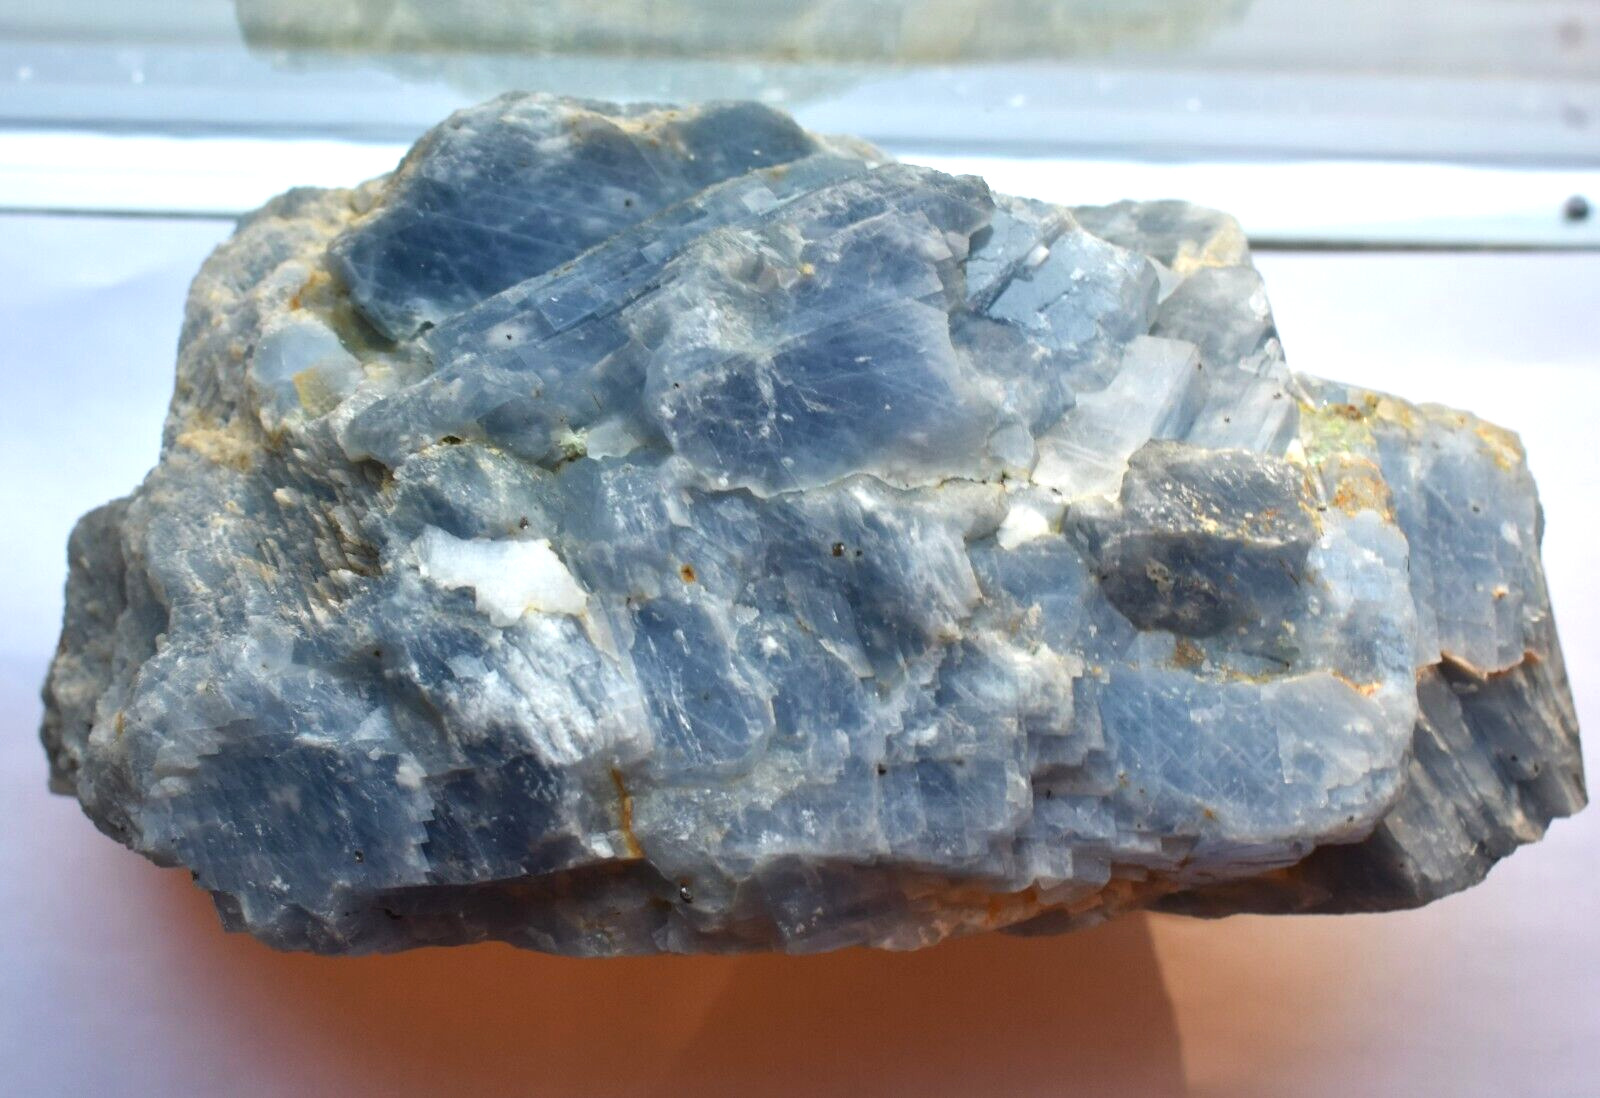 Large Blue Celestite Crystal Cluster Natural 8 Lb. 8.5